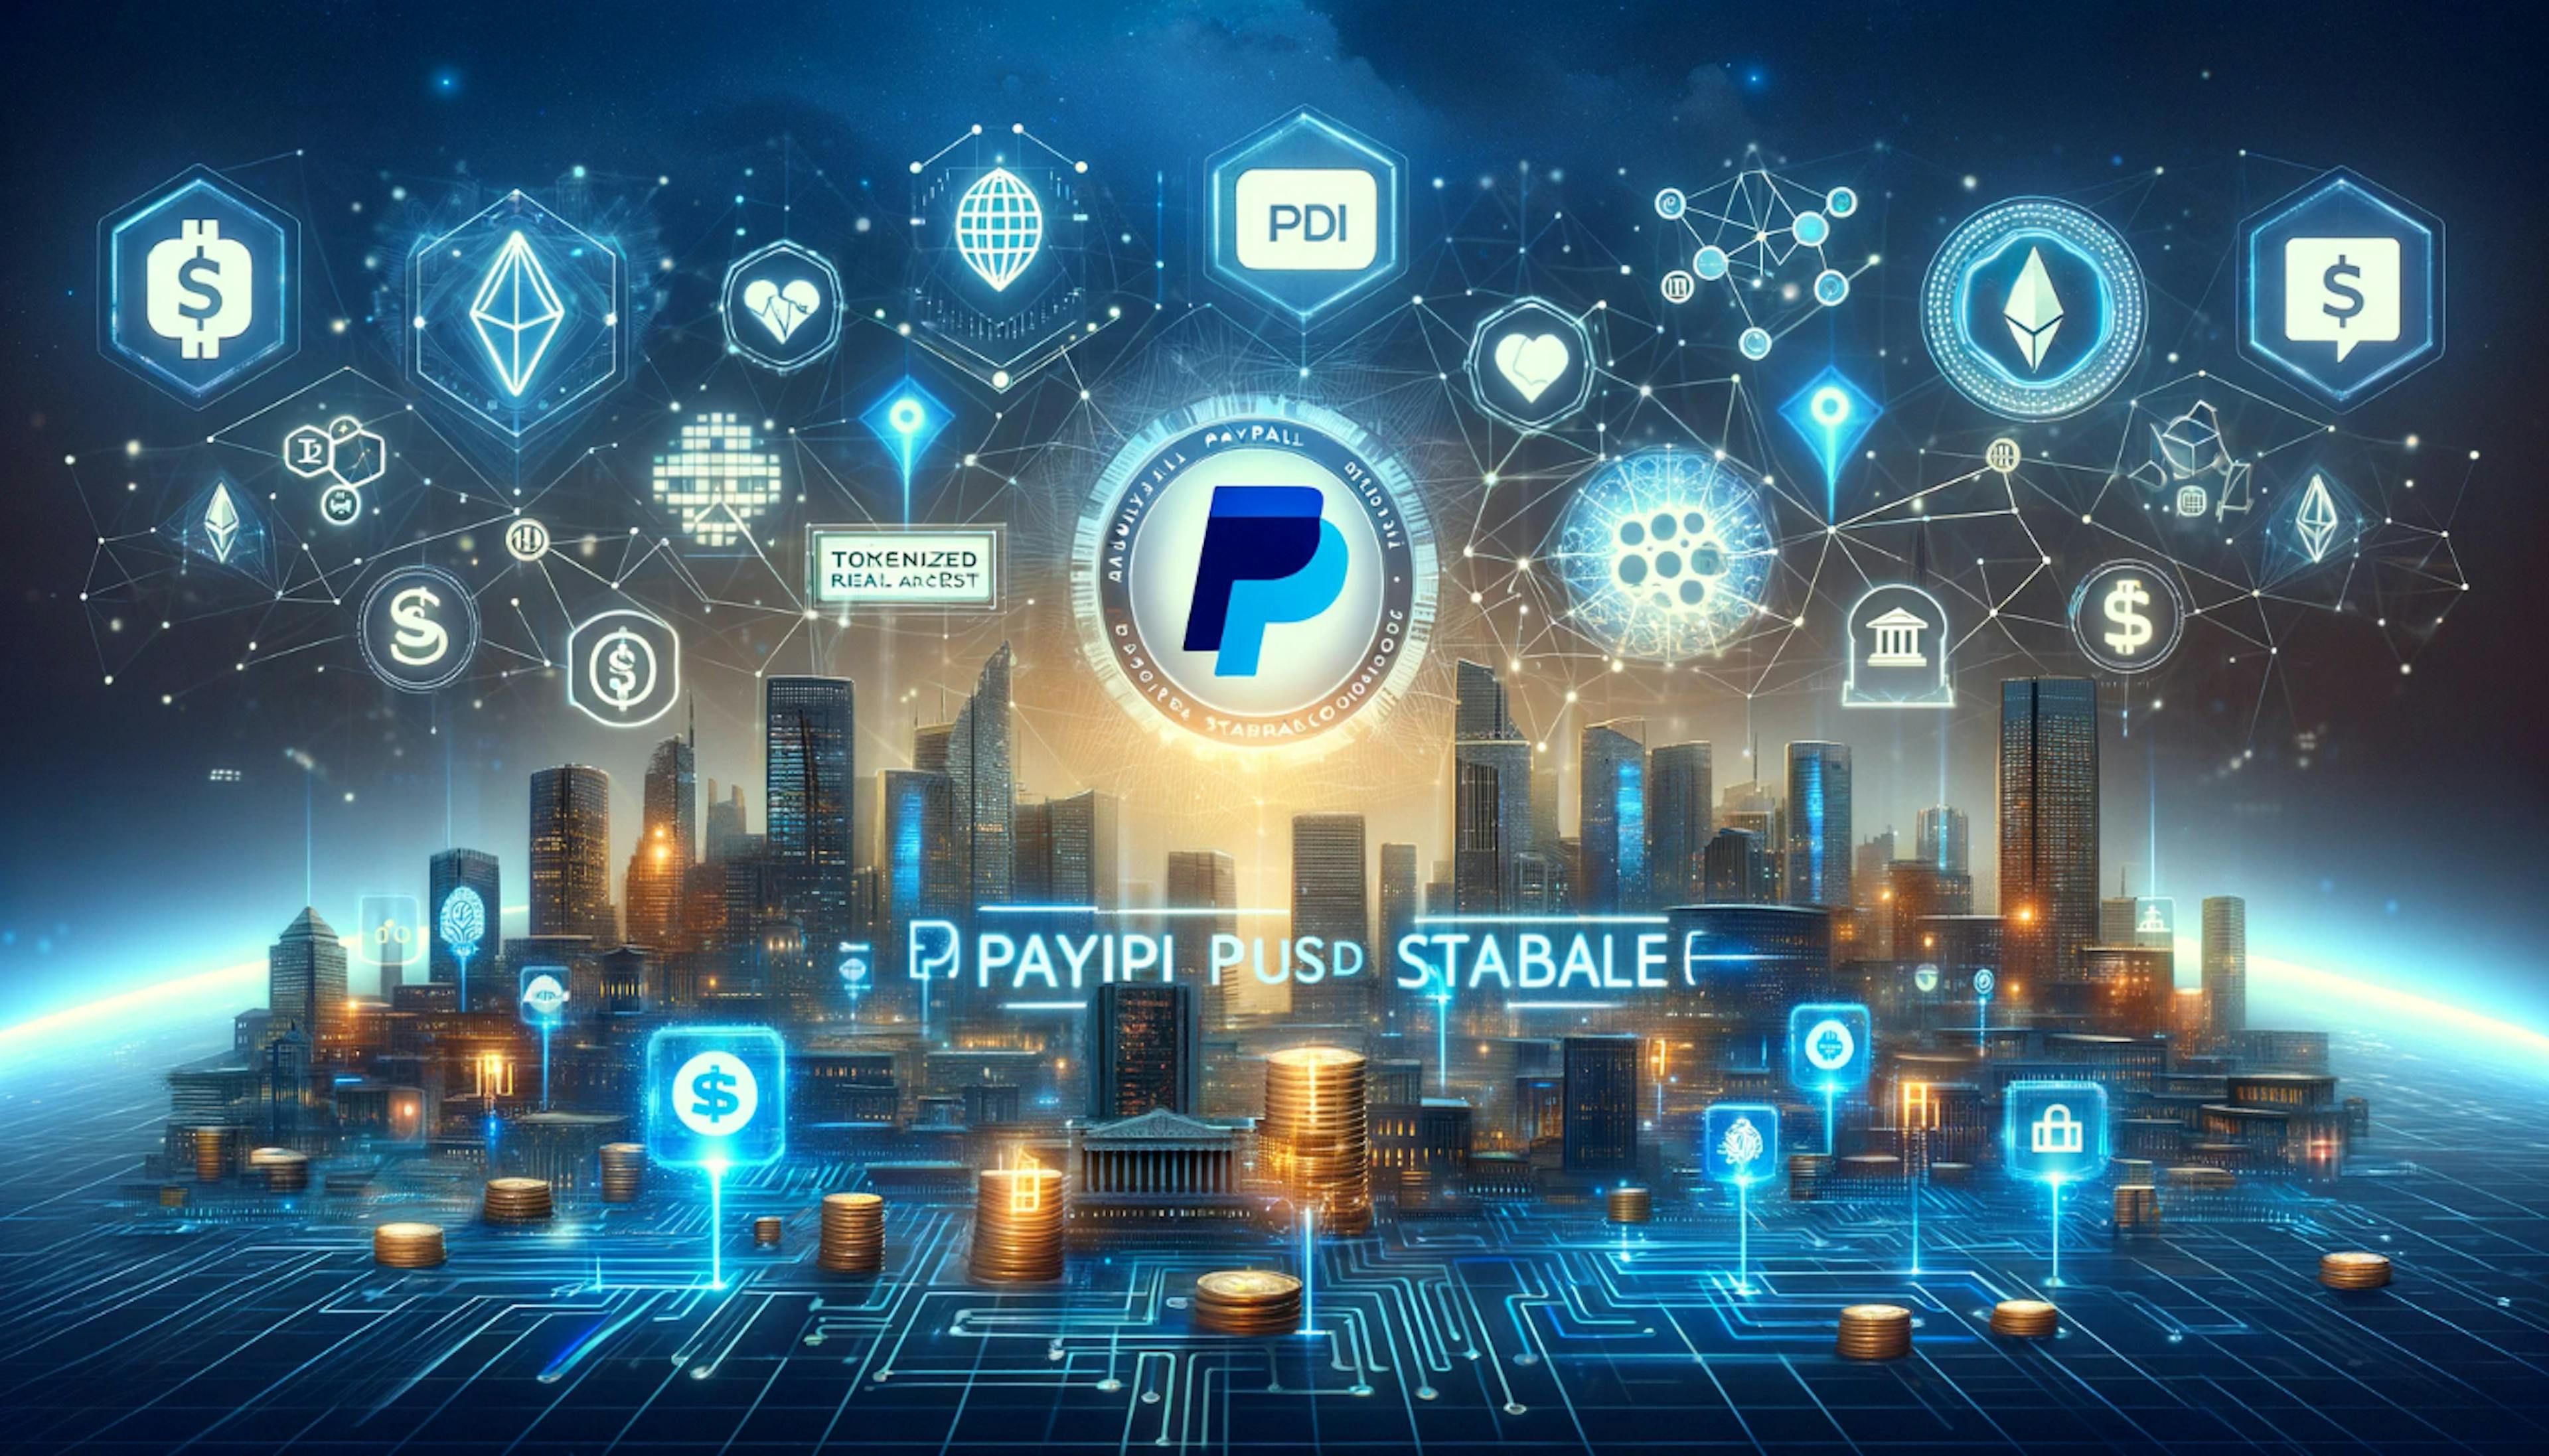 featured image - 金融の未来を拓く: PayPal の PYUSD と DeFi の融合